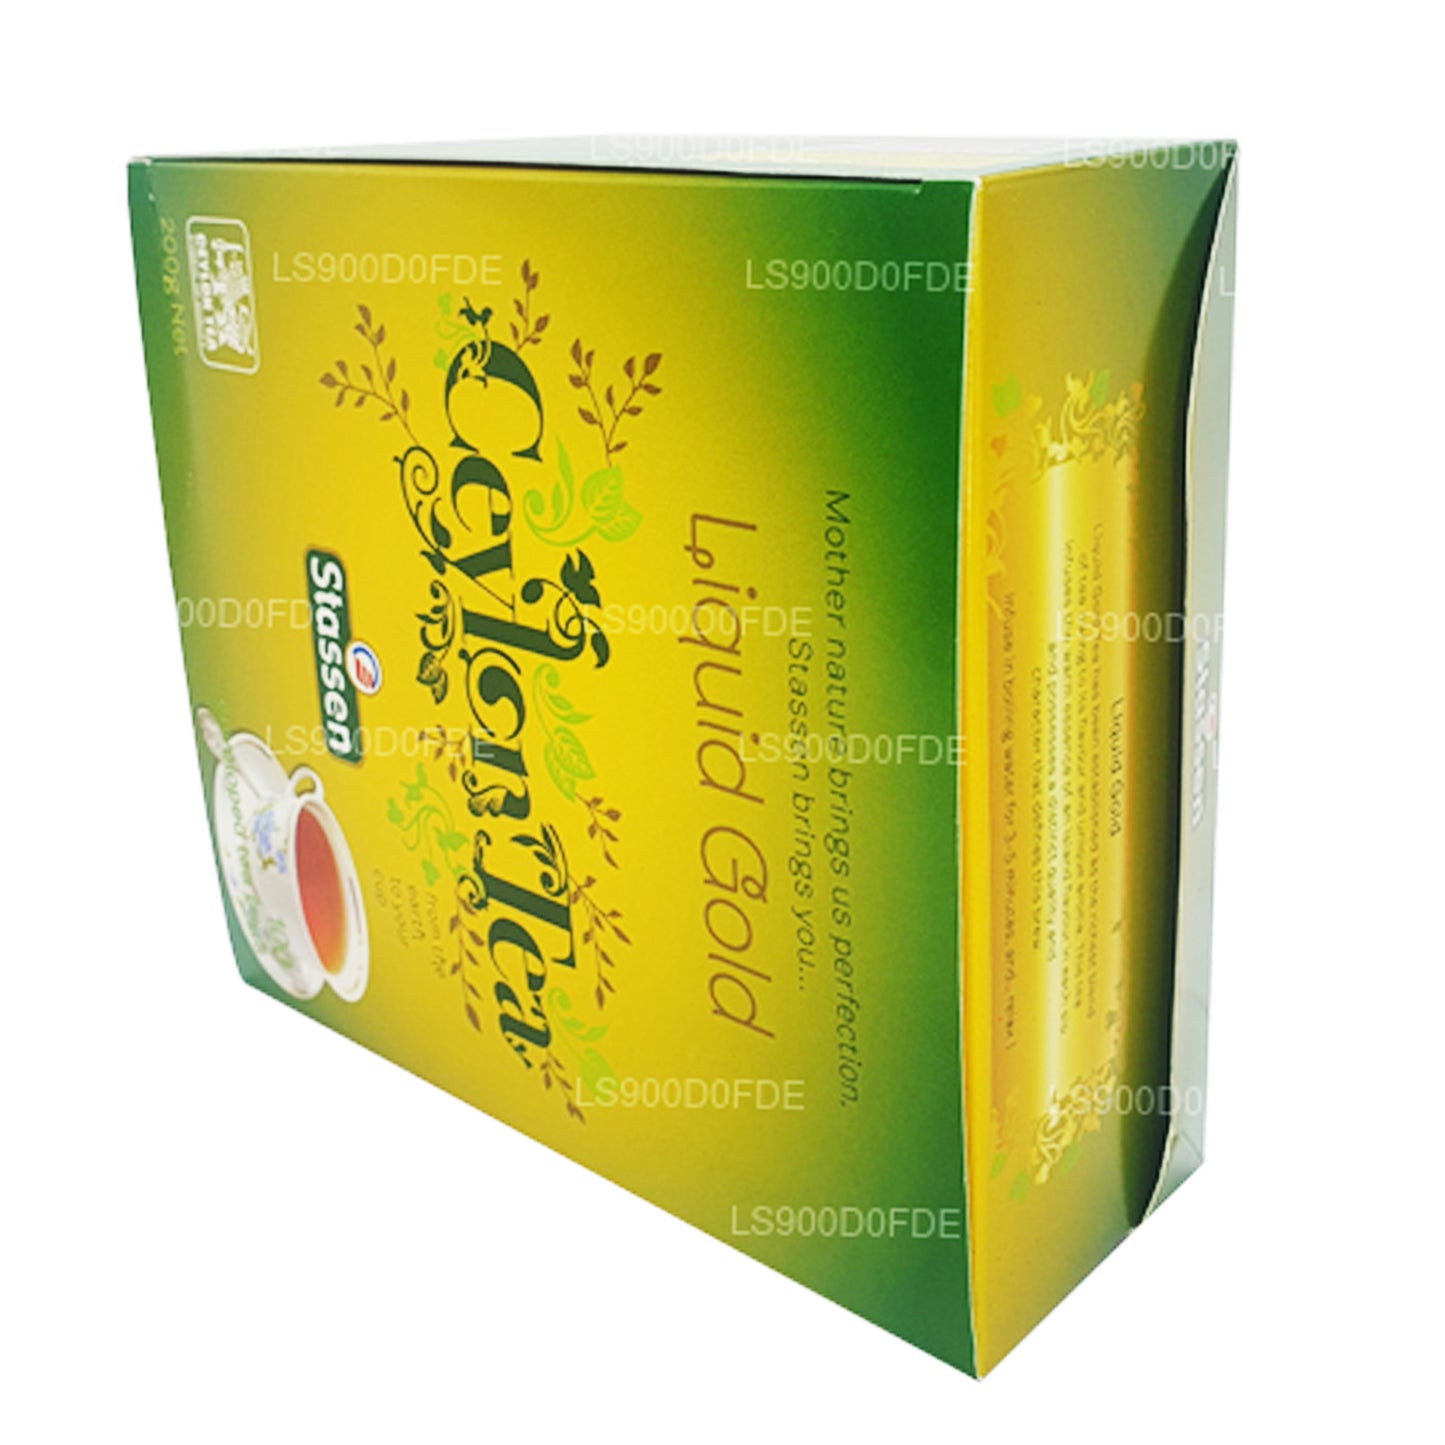 Жидкий золотой чай Stassen (200 г) 100 пакетиков